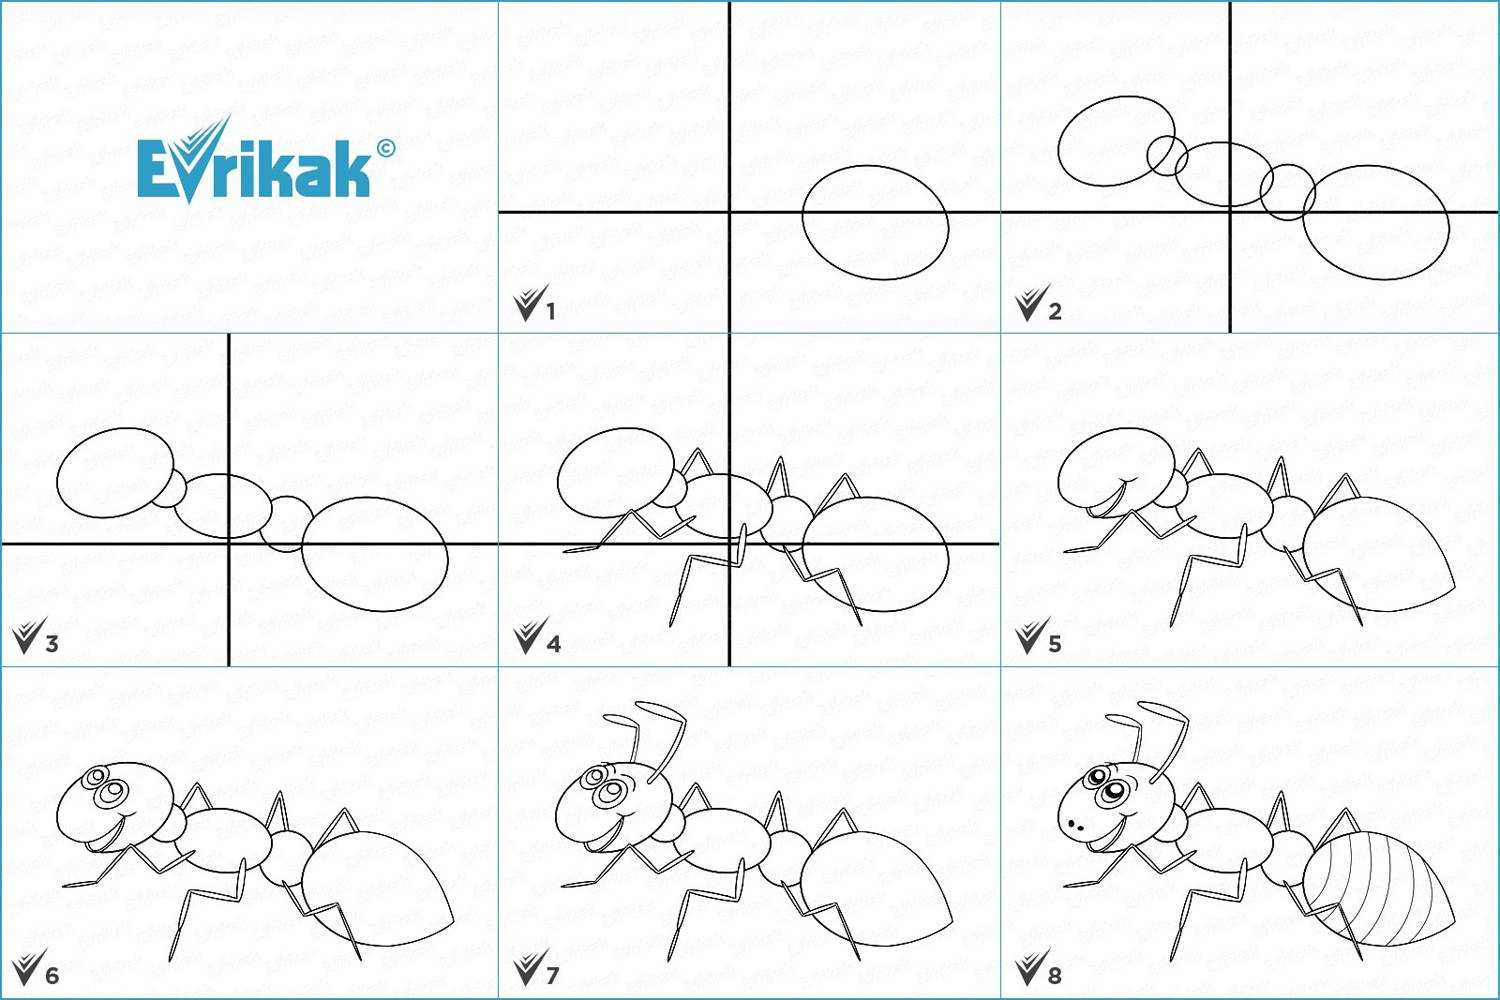 Как рисовать зверей пошагово своими руками: легкая инструкция с обзором оригинальных идей